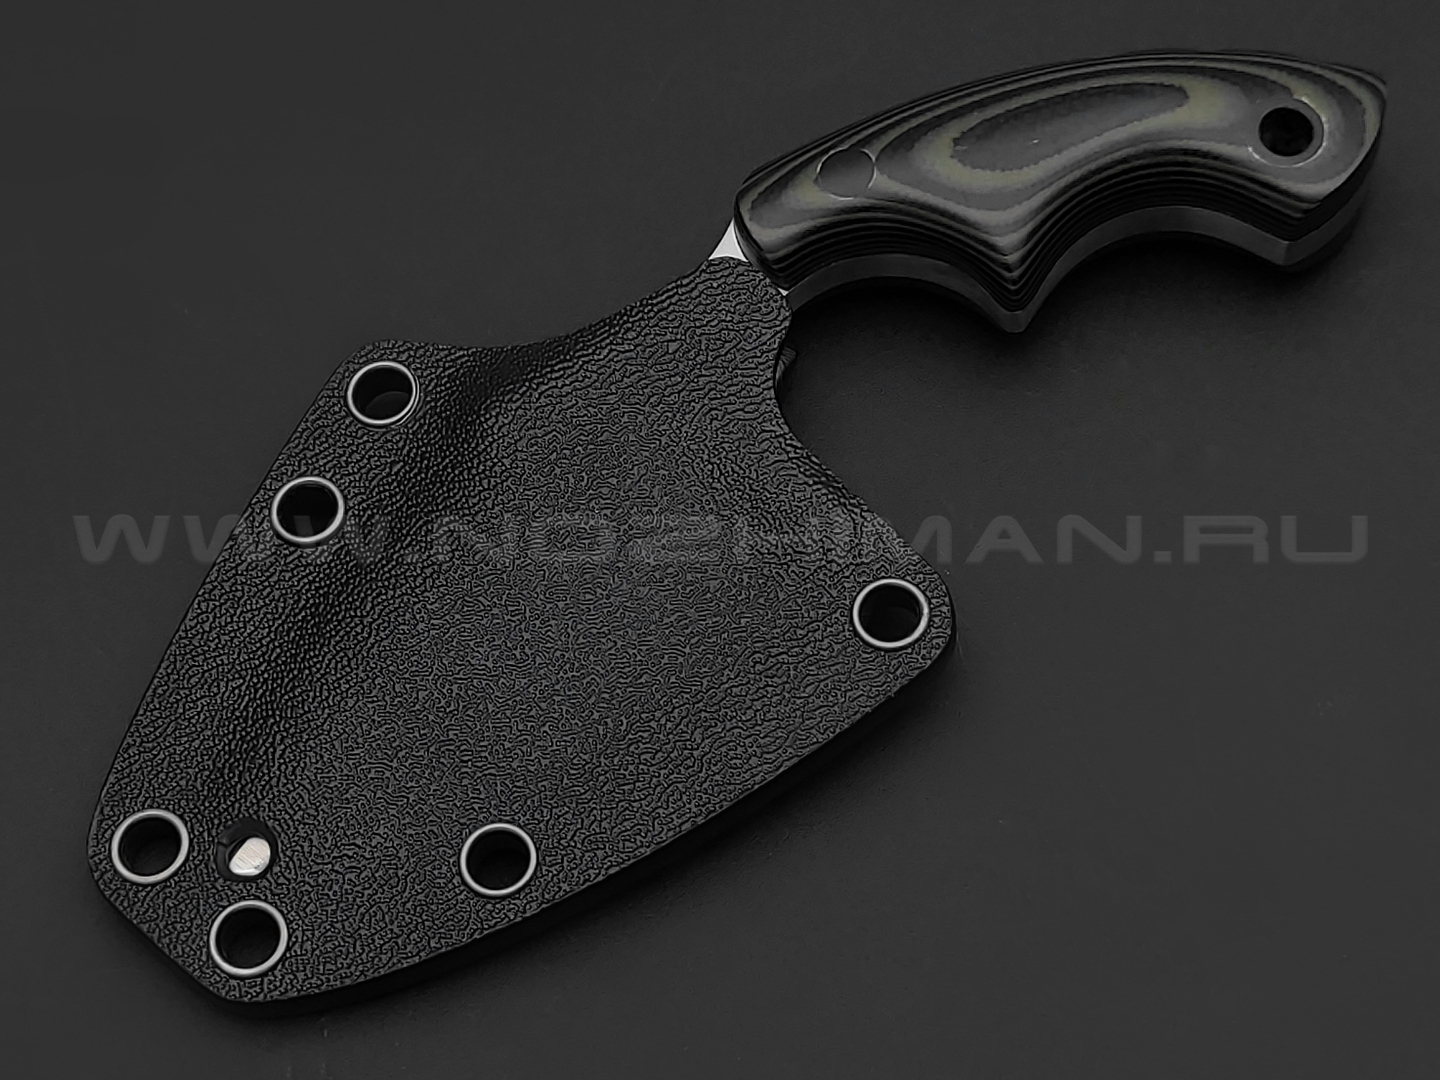 Волчий Век нож Custom EDC сталь 95Х18 WA satin, рукоять G10 black & green